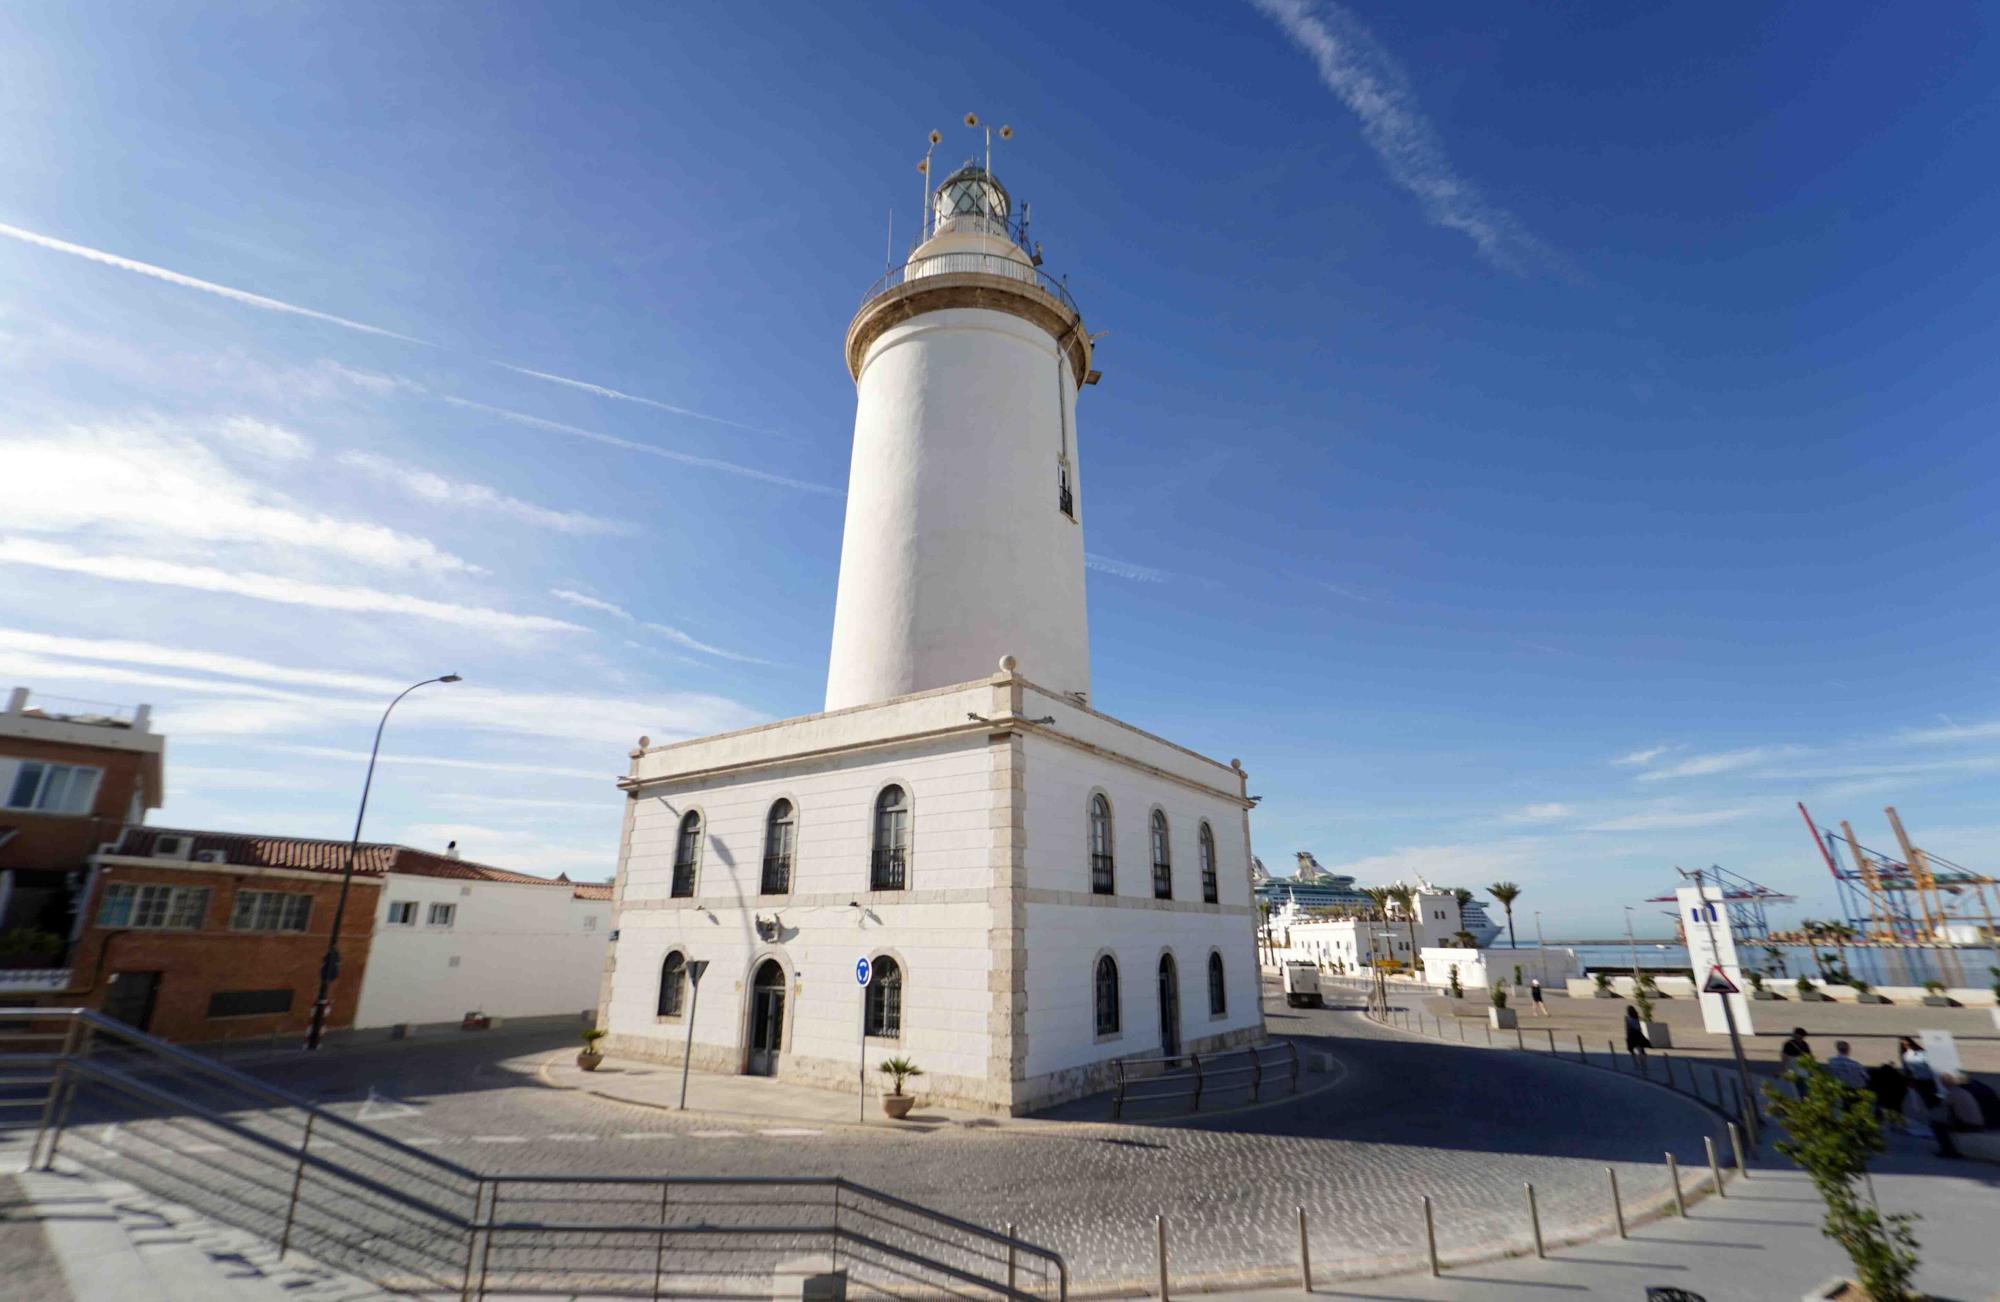 El festival de arquitectura Open House Málaga ha organizado una visita guiada al interior de La Farola.